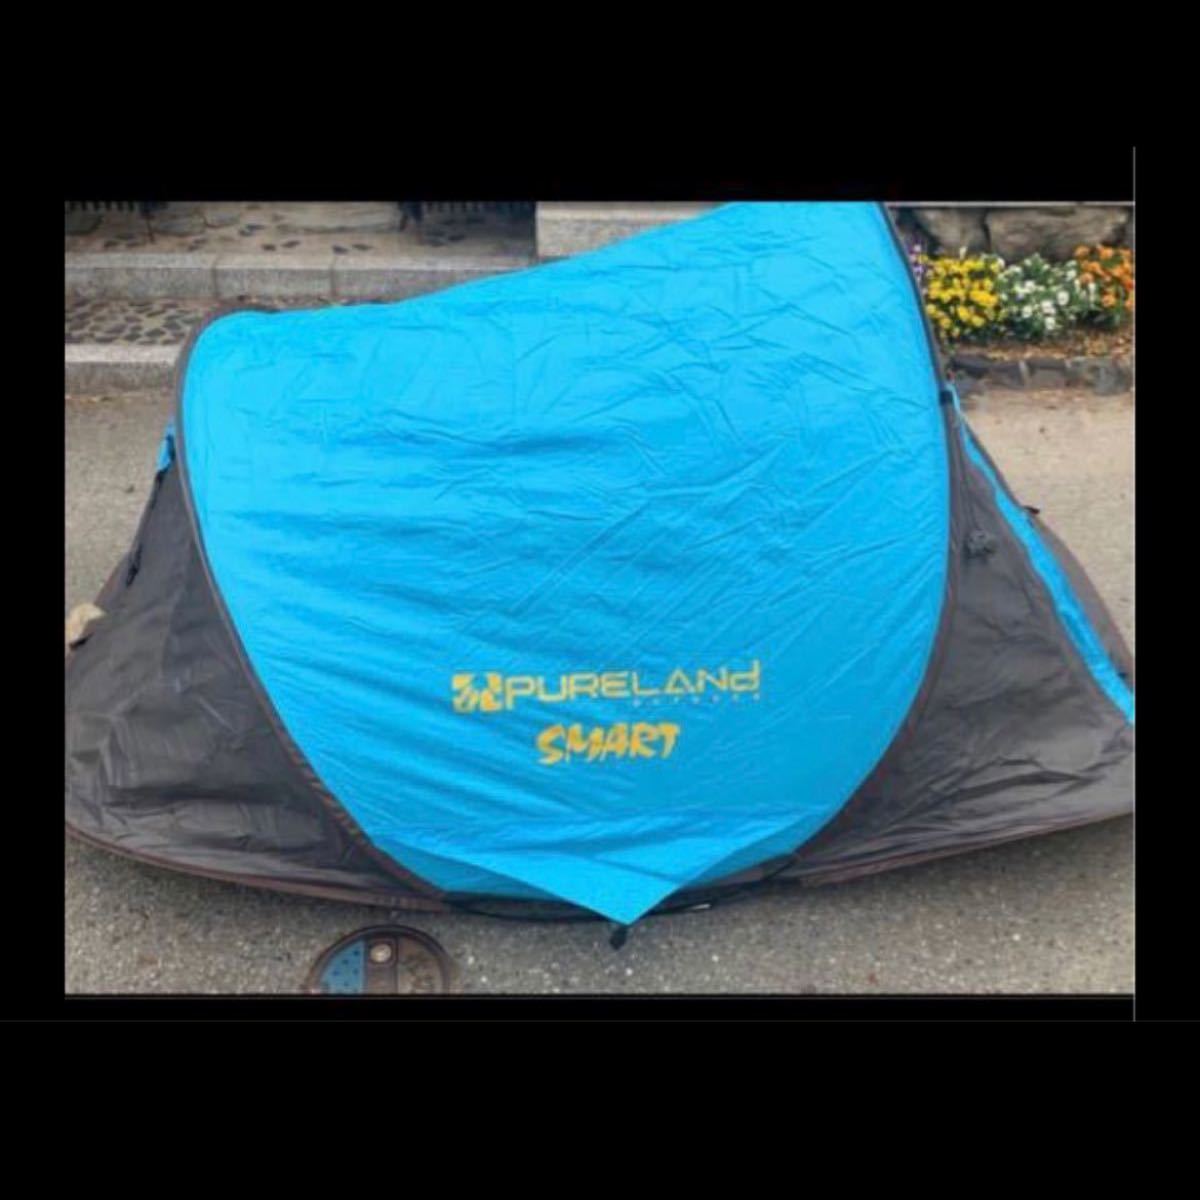 テント 2人用 アウトドア ソロ キャンプテント ワンタッチ 防風防水 ポップアップテント 設営簡単